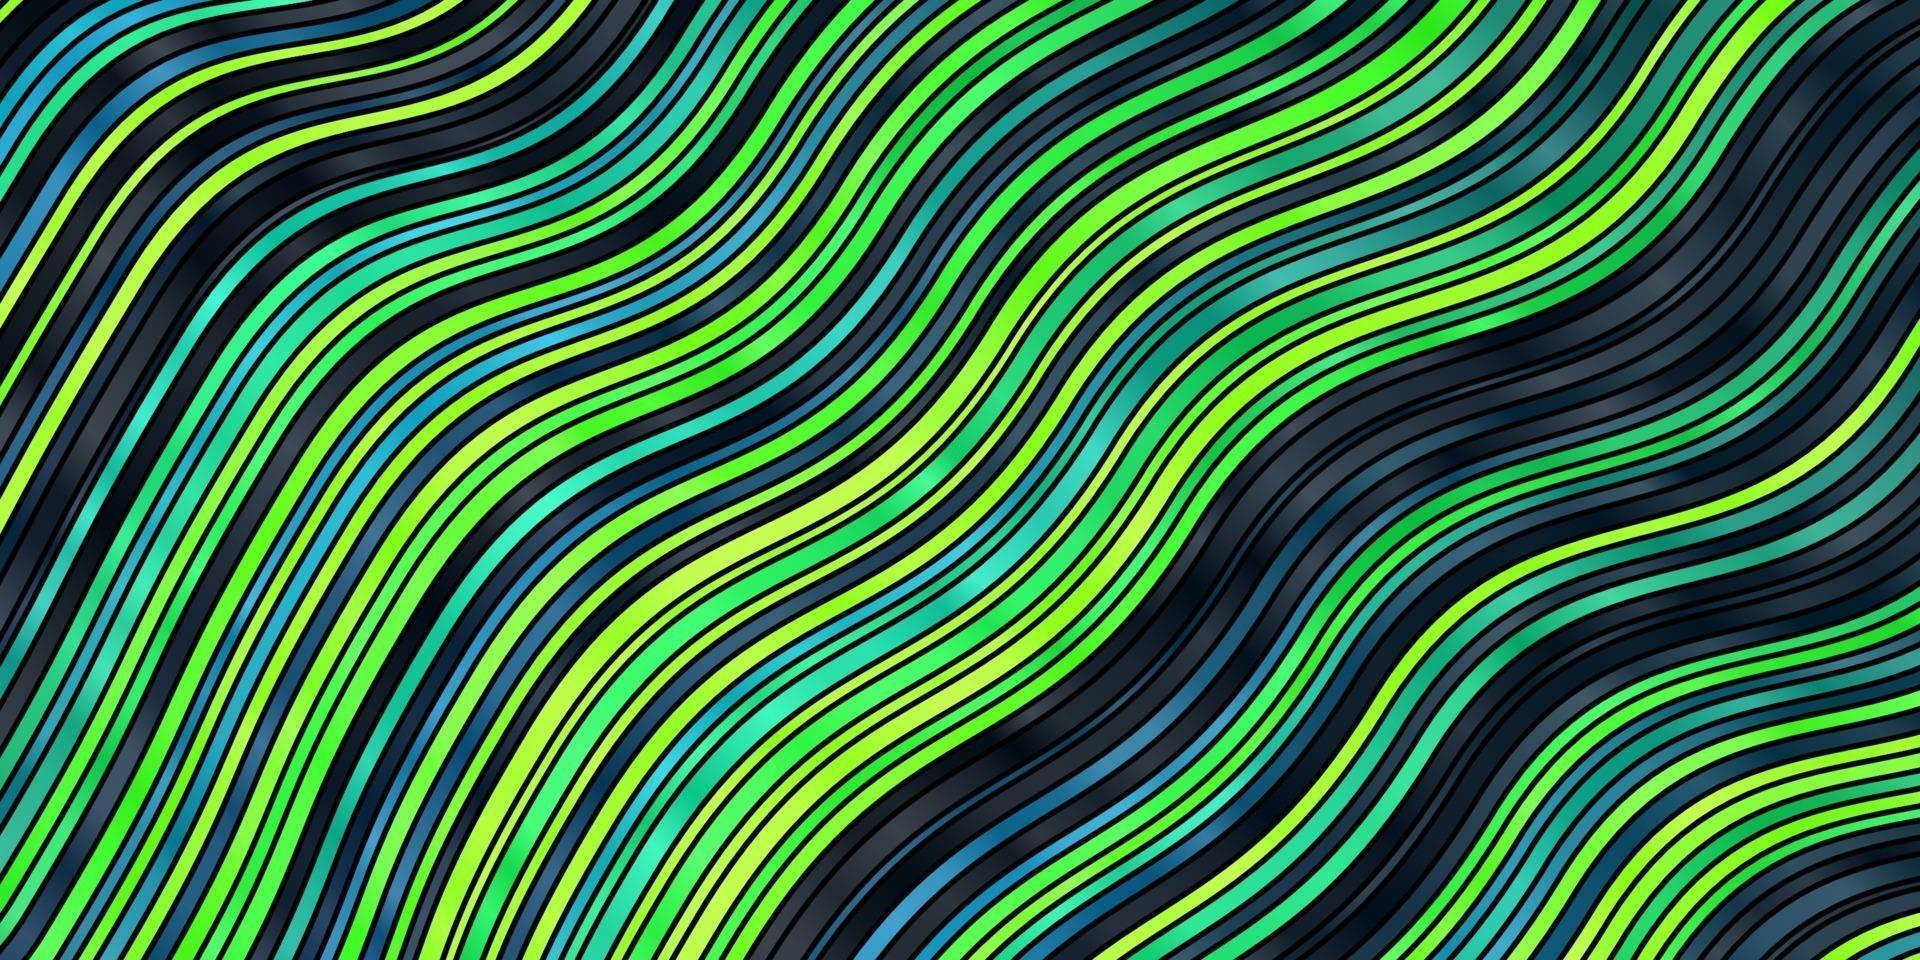 ljusblå, grön vektormall med böjda linjer. vektor